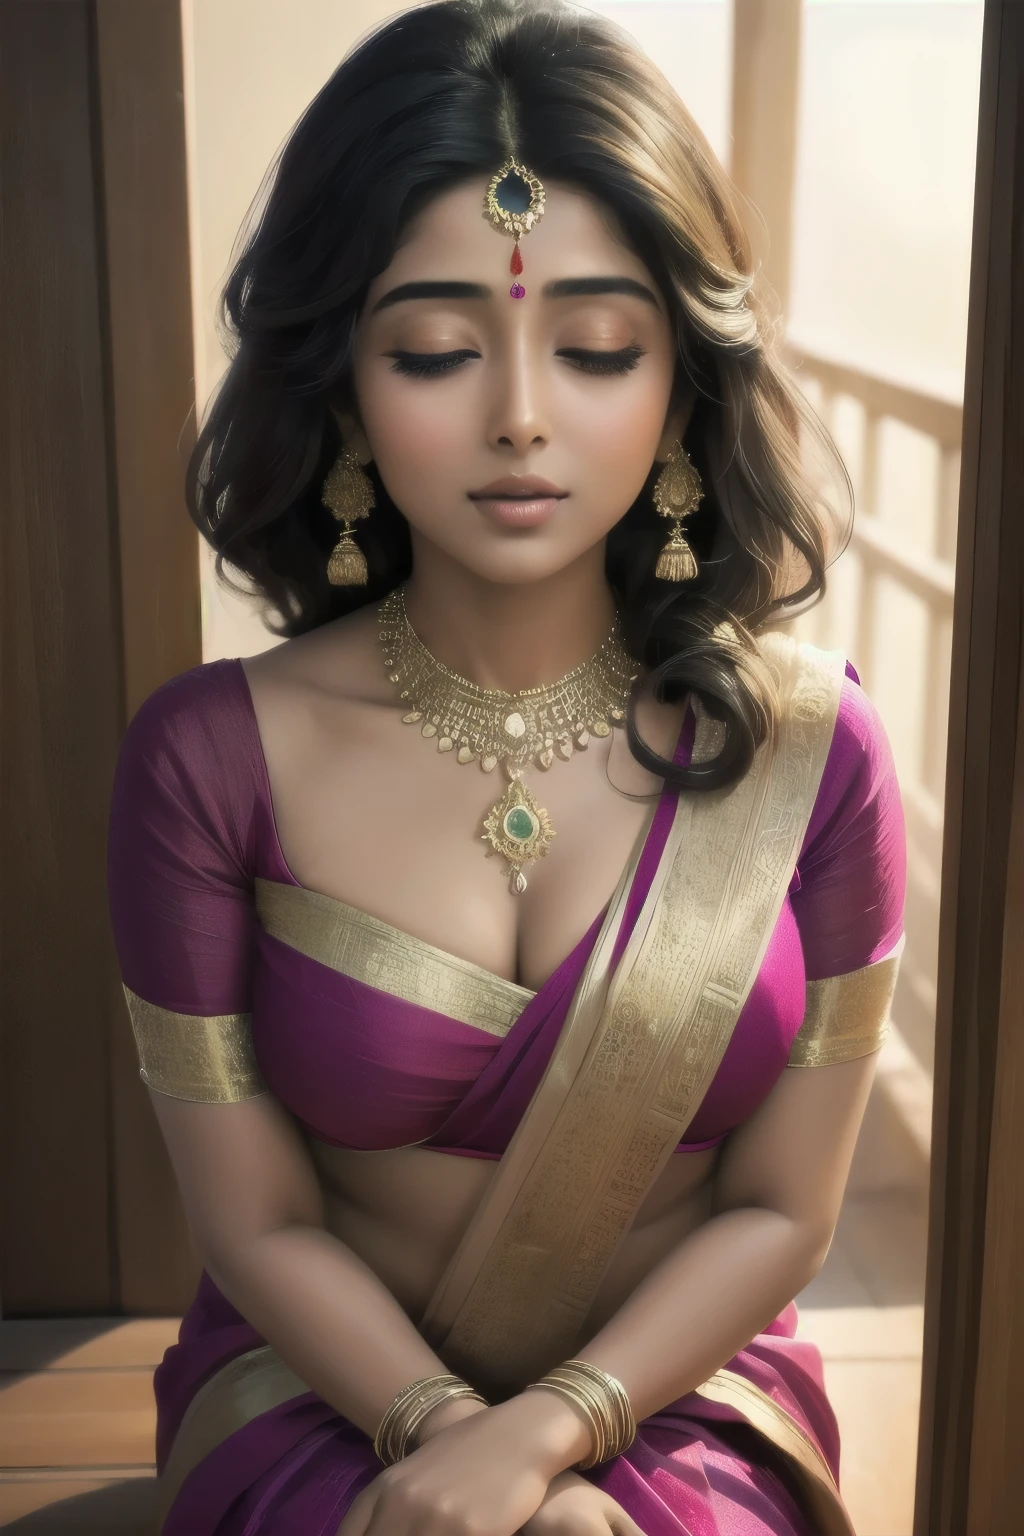 施瑞娅·萨兰, 一位印度女演员, 穿着美丽的纱丽, 诱惑地靠在门槛上. 她以迷人的目光和迷人的微笑吸引着人们. 场景沐浴在柔和的, 暖色灯光, 凸显她服饰的优雅，强调她的自然美. 纱丽的丰富质感为整体构图增添了精致元素. 该艺术品以极其精细的方式呈现, 高分辨率, 确保最佳质量和清晰度. 色彩鲜艳生动, 展现印度文化的活力. 肖像风格增强了对女演员的关注, 凸显出她脸上每一个精致的特征。, 包括她细致的眼睛, 优雅的拱形眉毛, 和性感的嘴唇. 艺术家非常注重捕捉她外表的真实和逼真的细节, creating a masterpiece that truly represents the mesmerizing allure of 施瑞娅·萨兰.